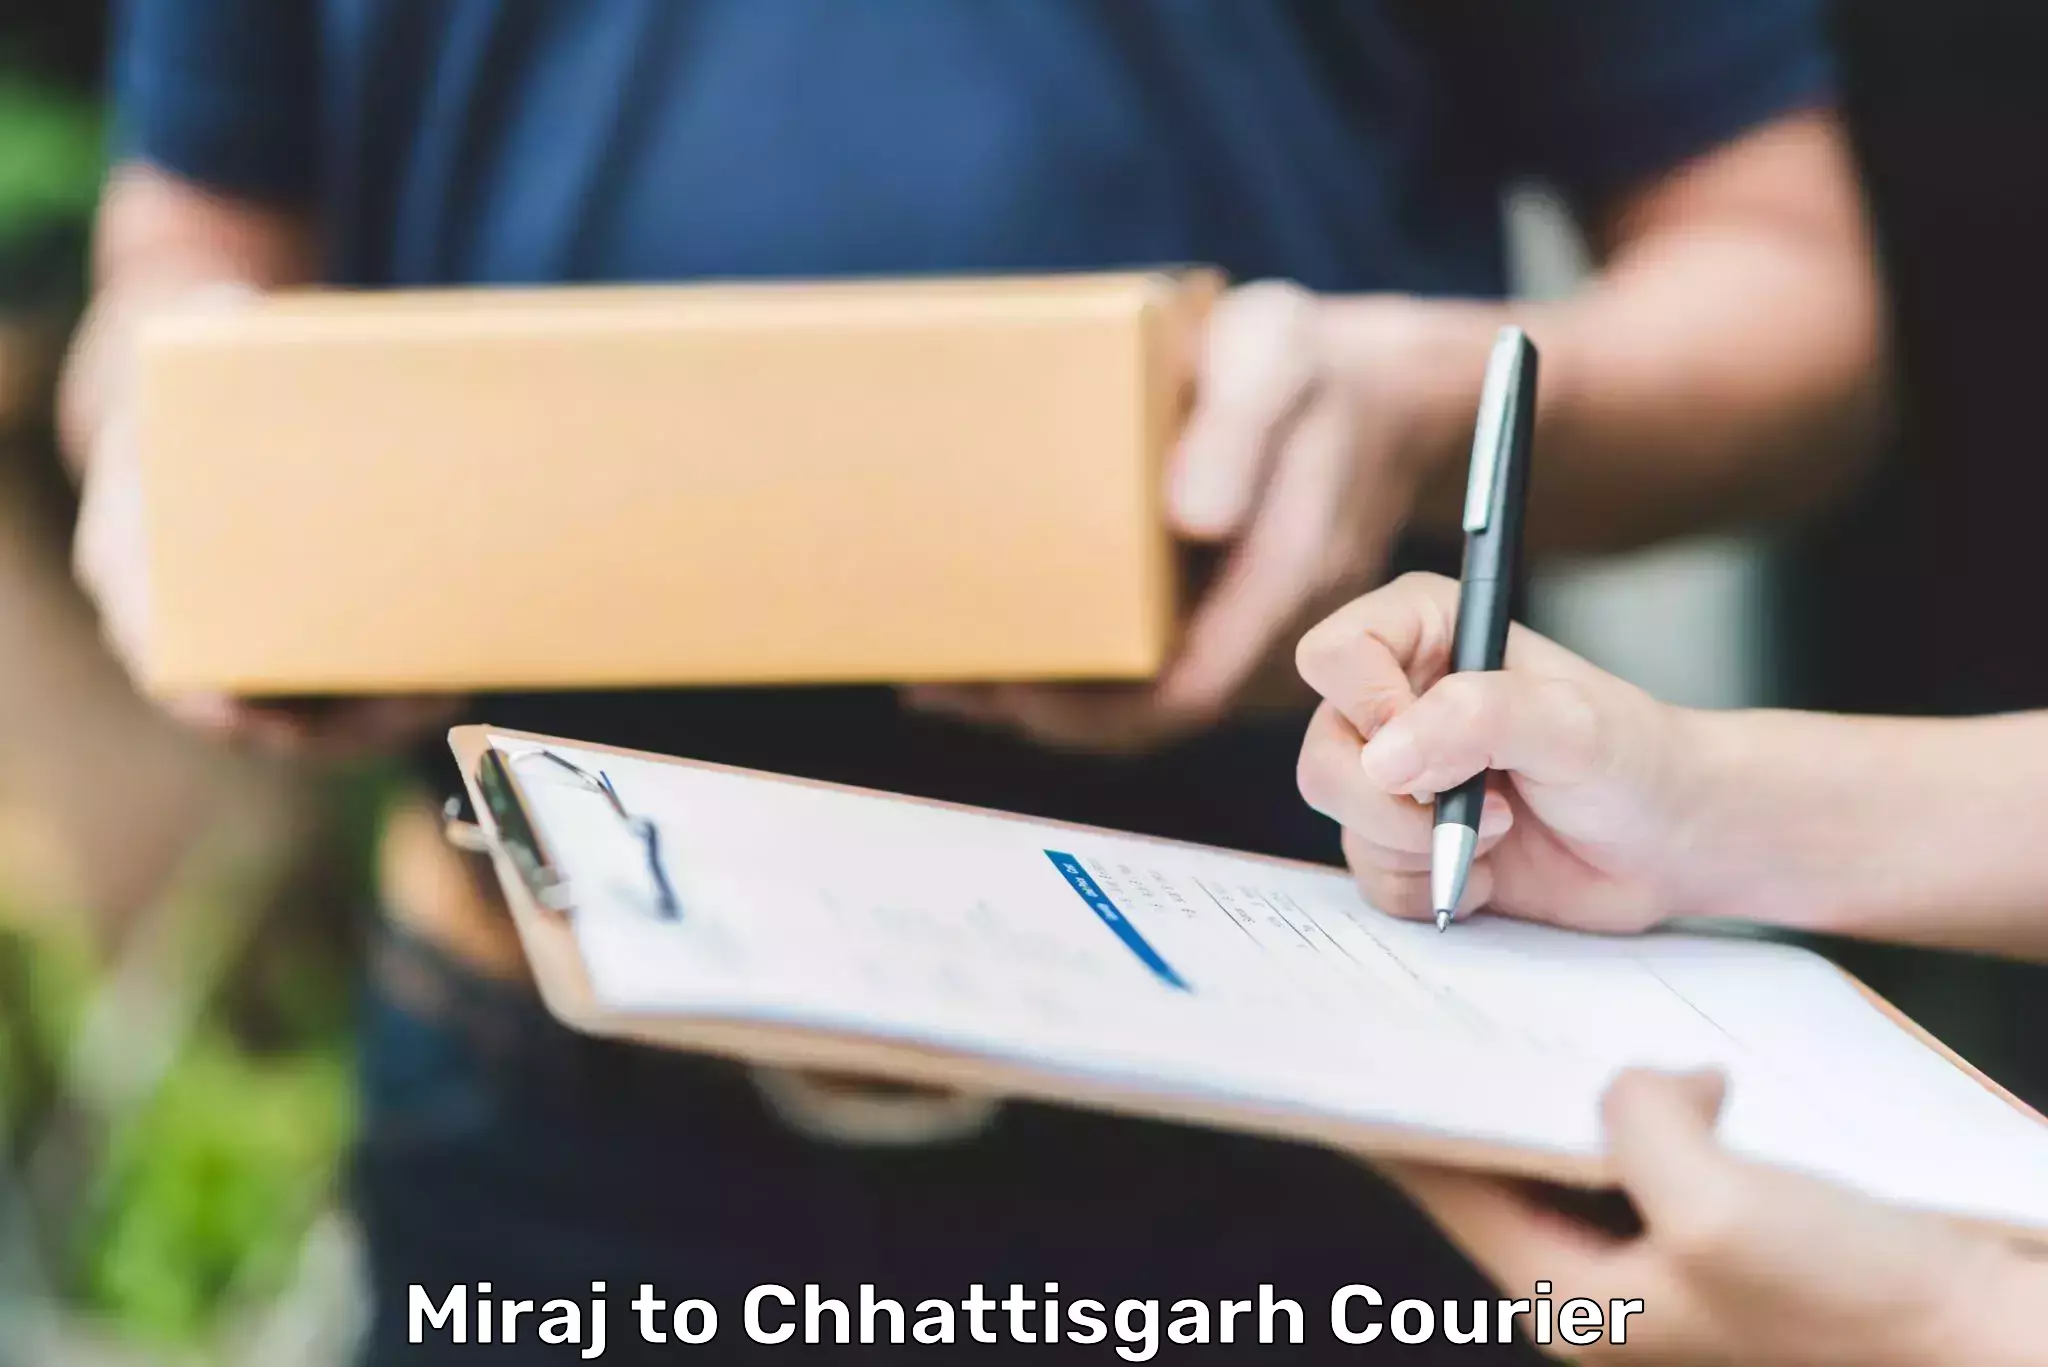 Efficient order fulfillment Miraj to Jashpur